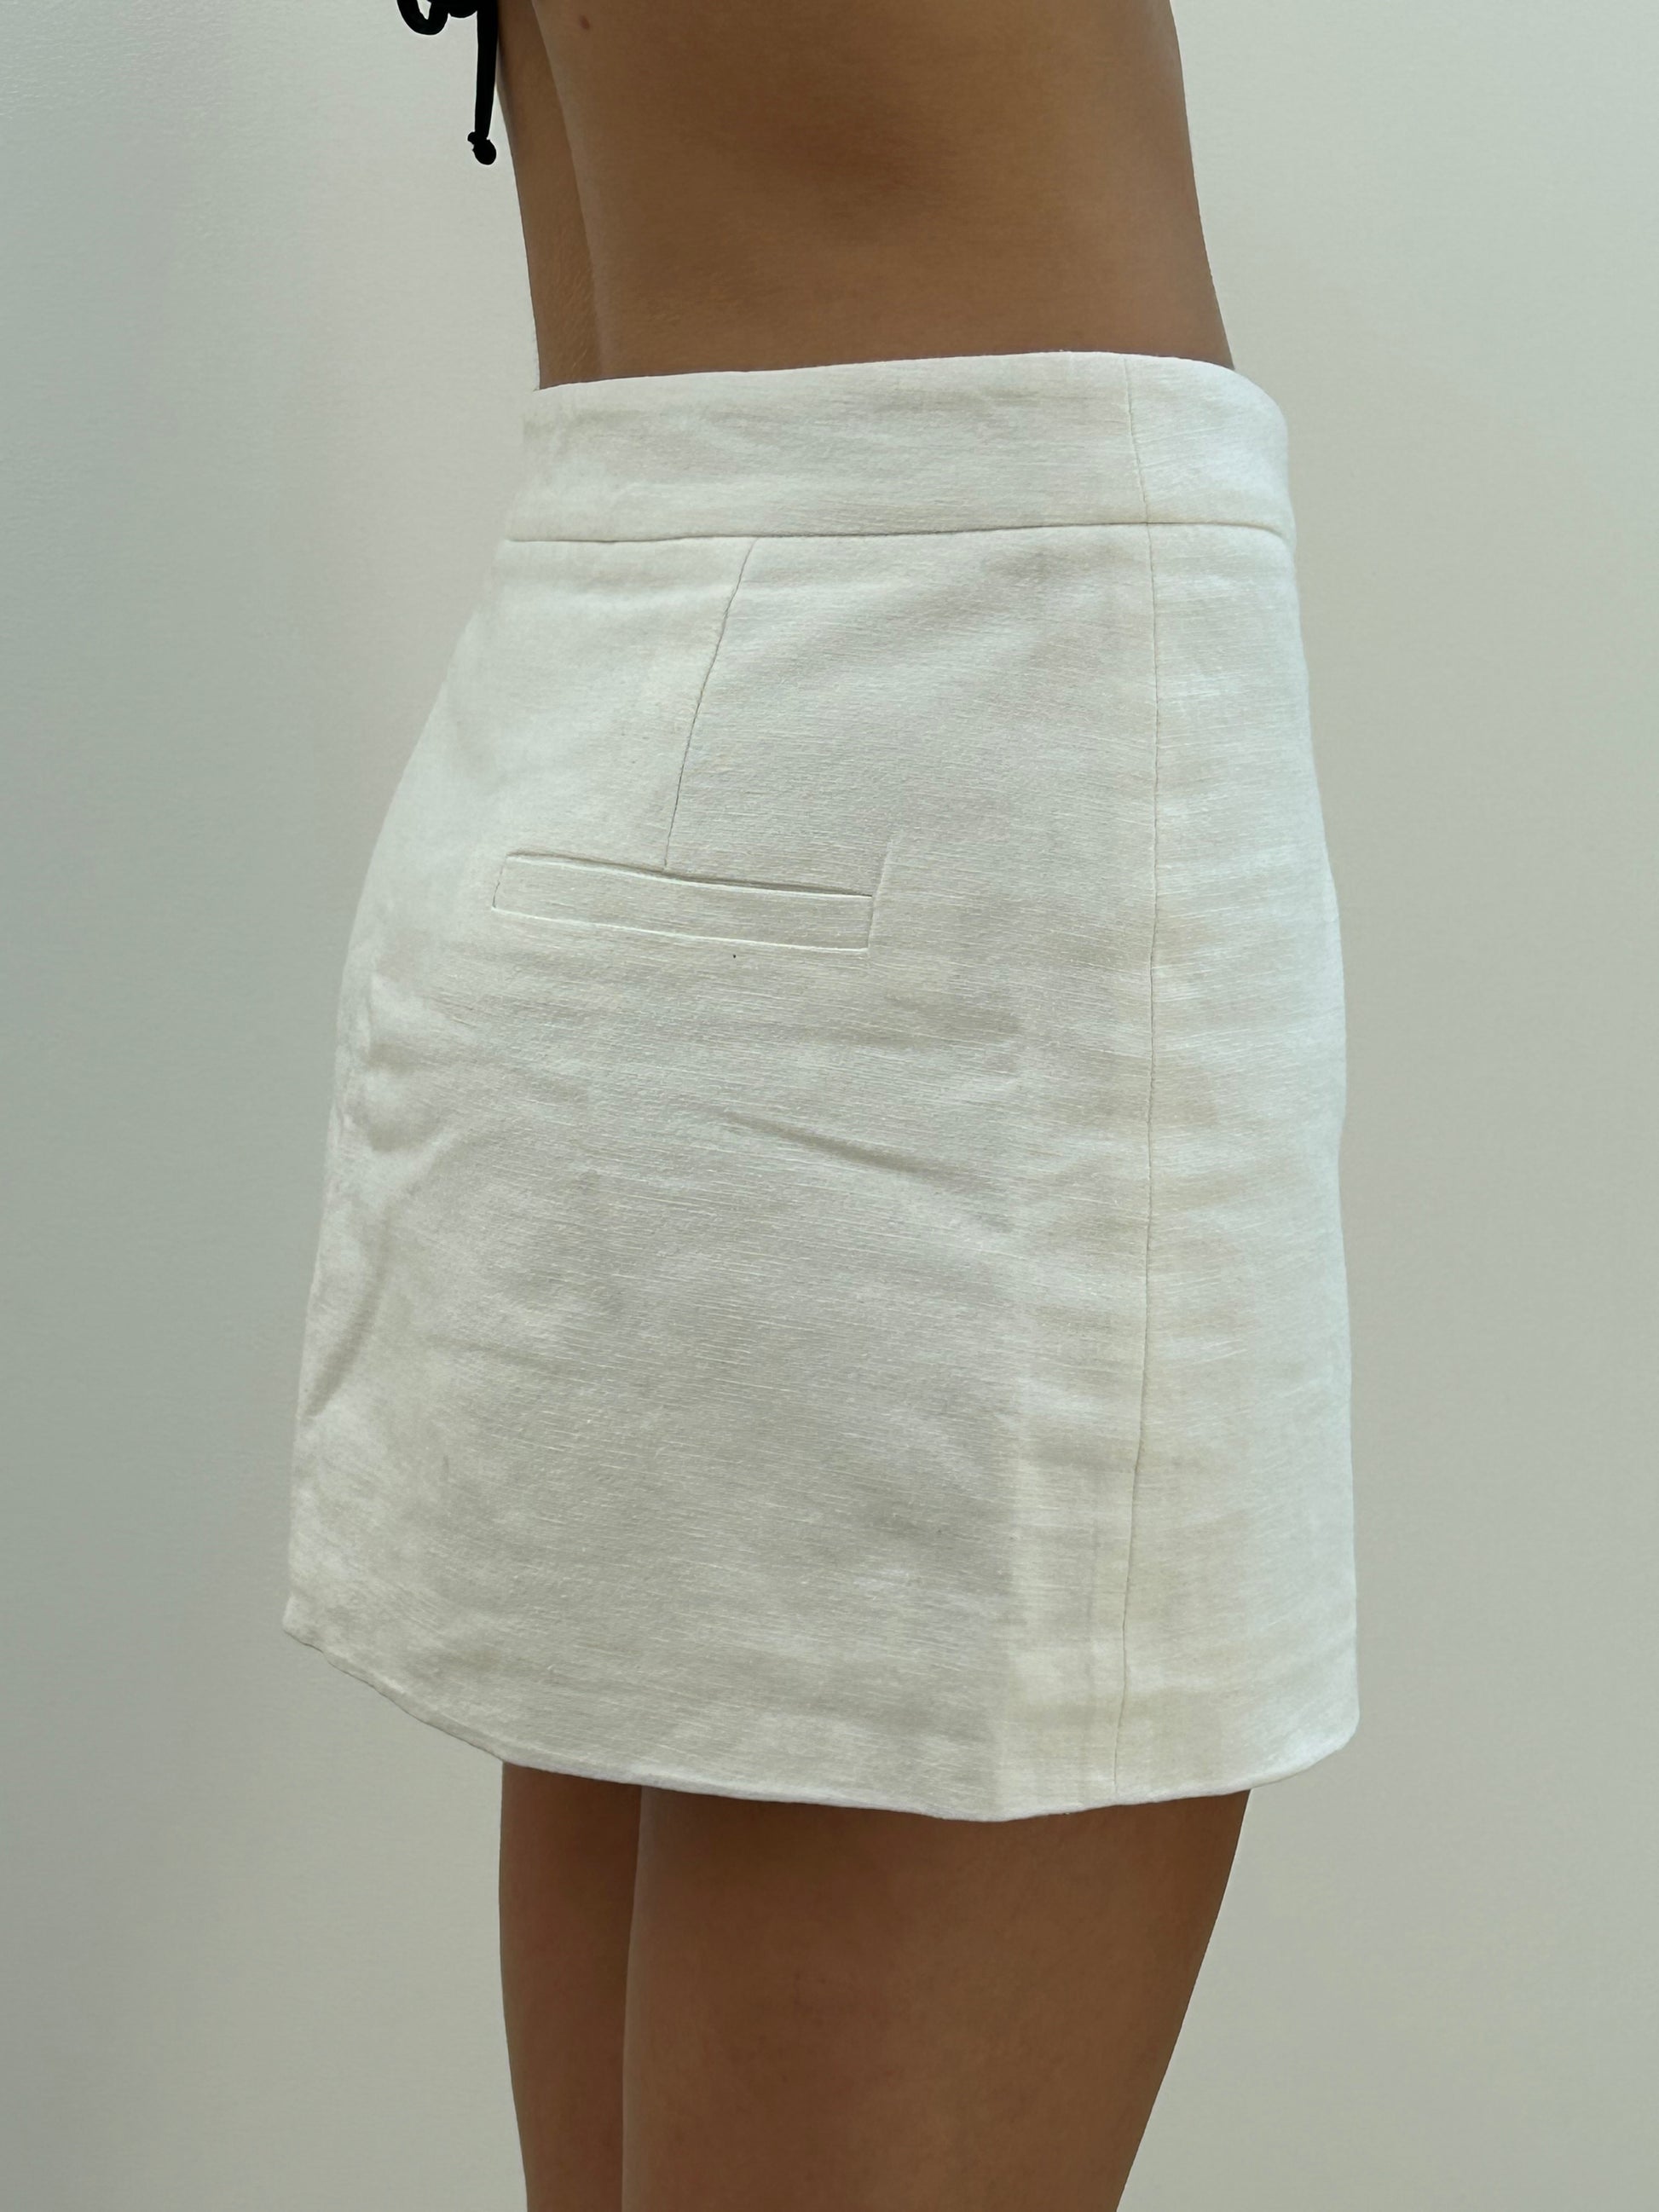 Alias Mini Skirt in White – The Waiting Room